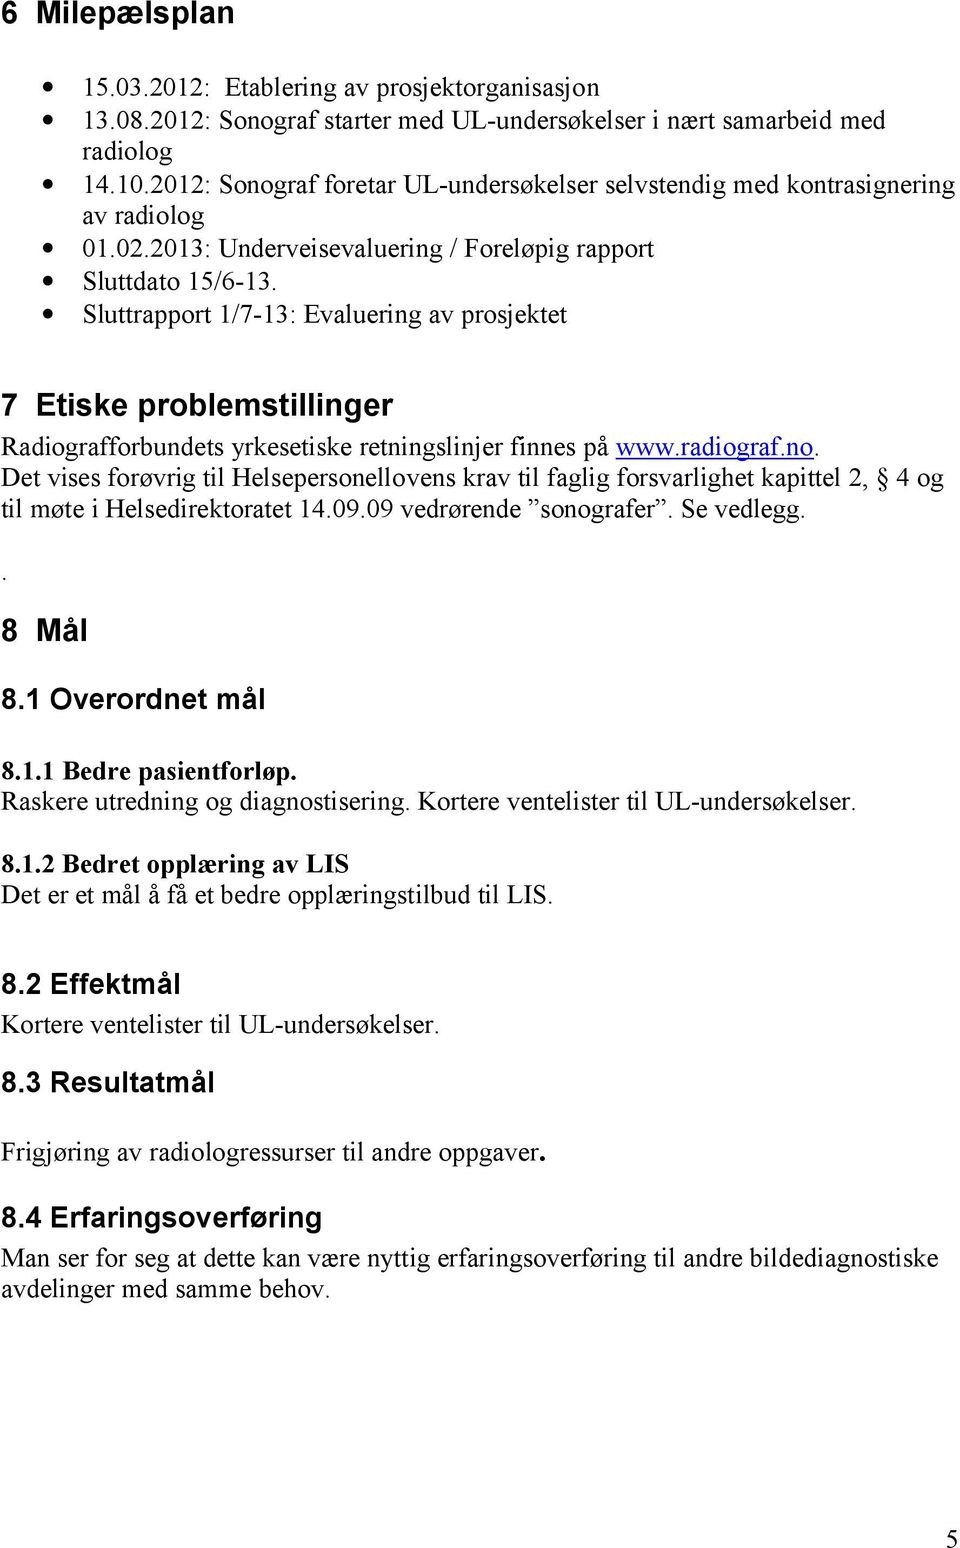 Sluttrapport 1/7-13: Evaluering av prosjektet 7 Etiske problemstillinger Radiografforbundets yrkesetiske retningslinjer finnes på www.radiograf.no.